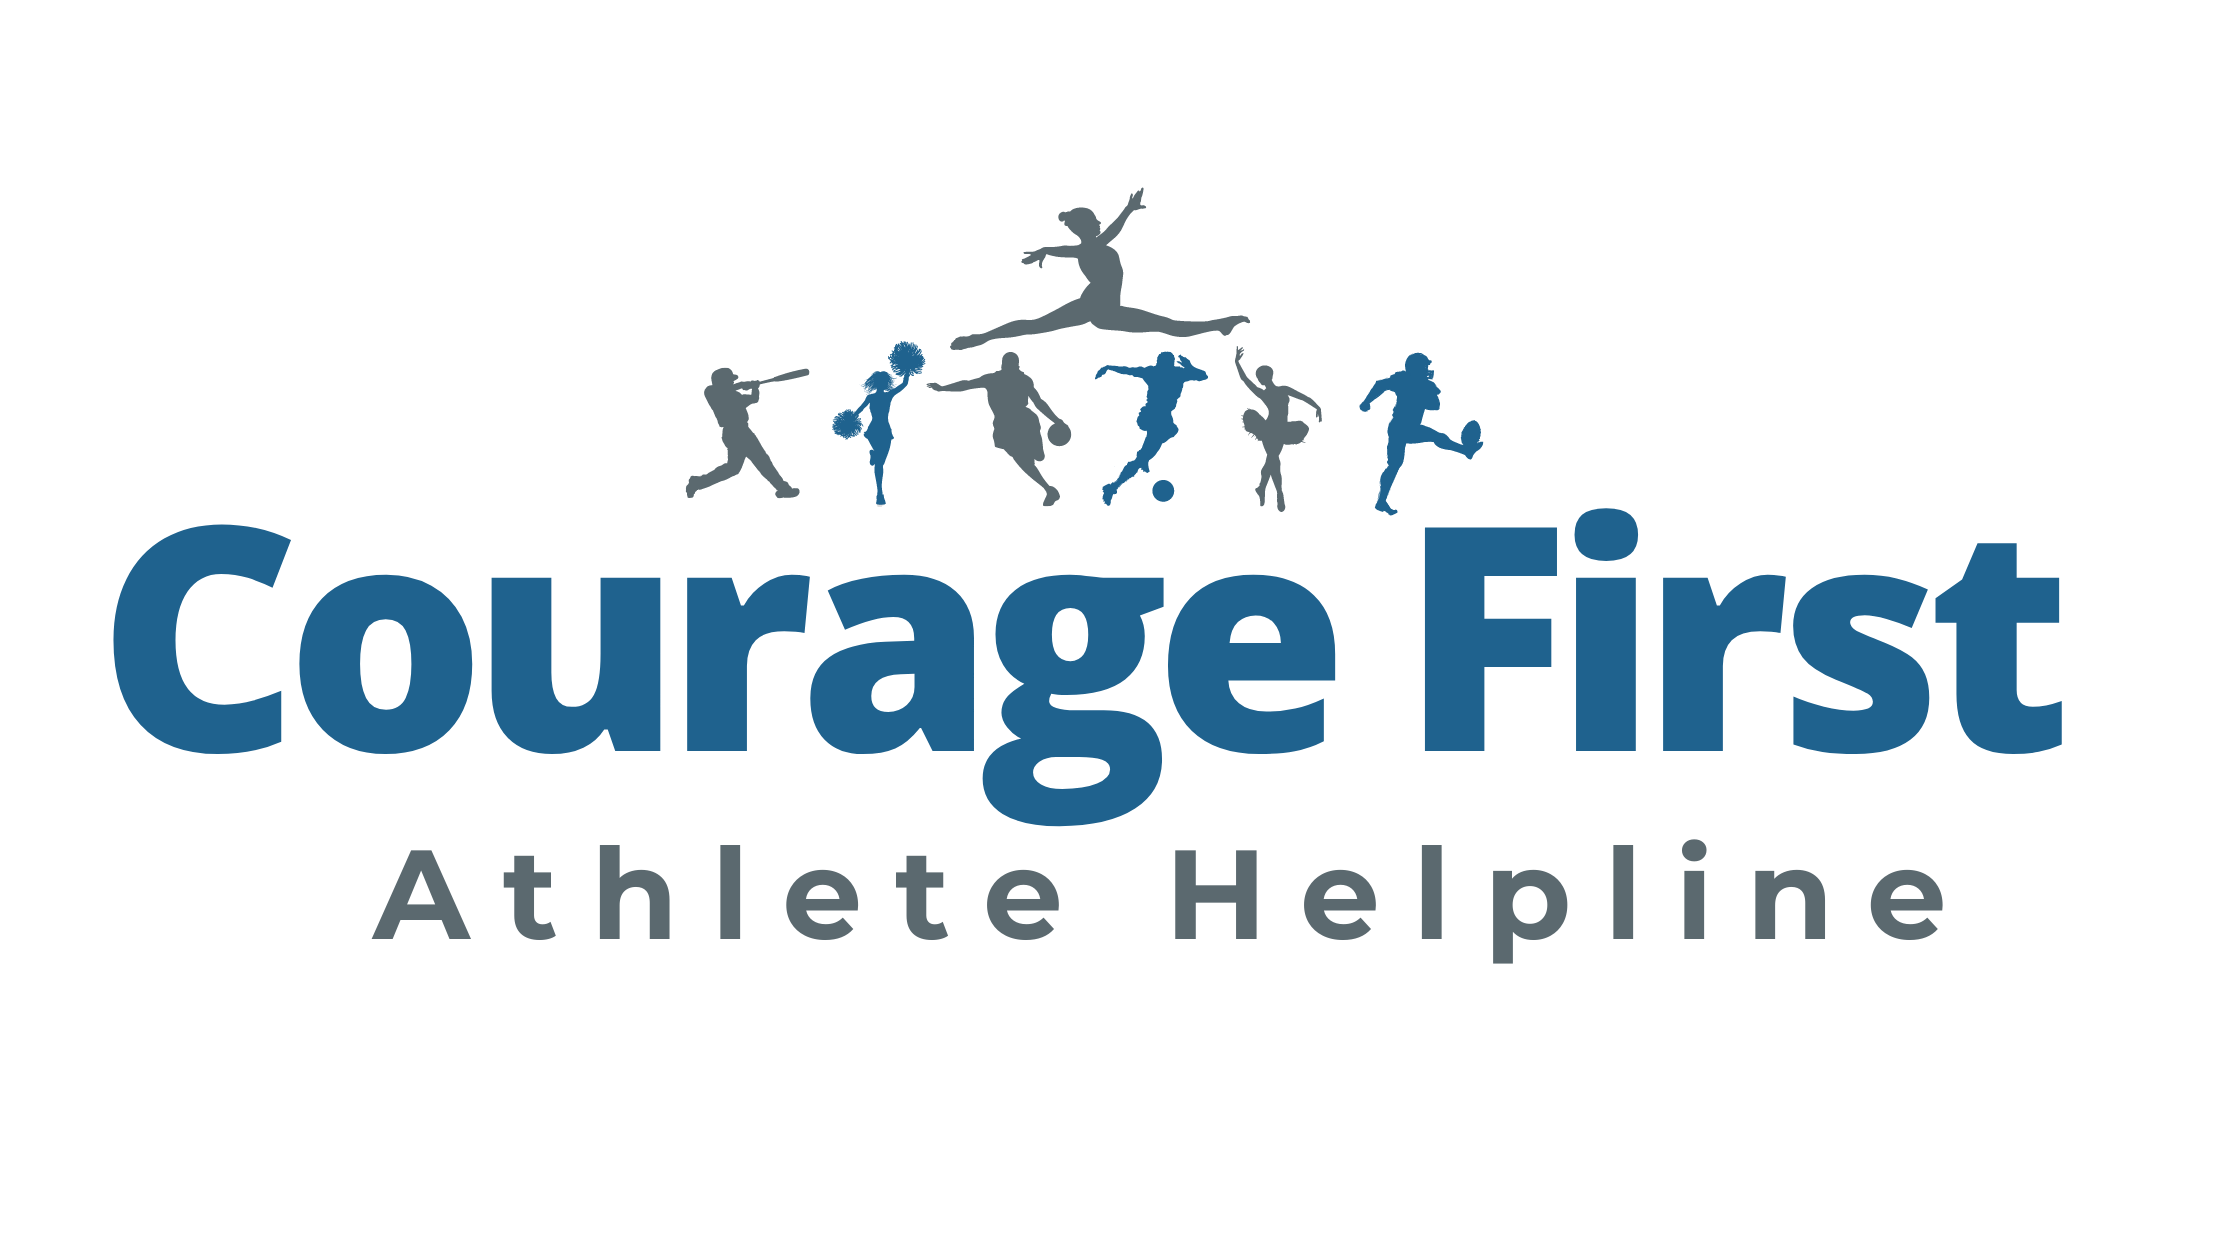 The Courage First Athlete Helpline